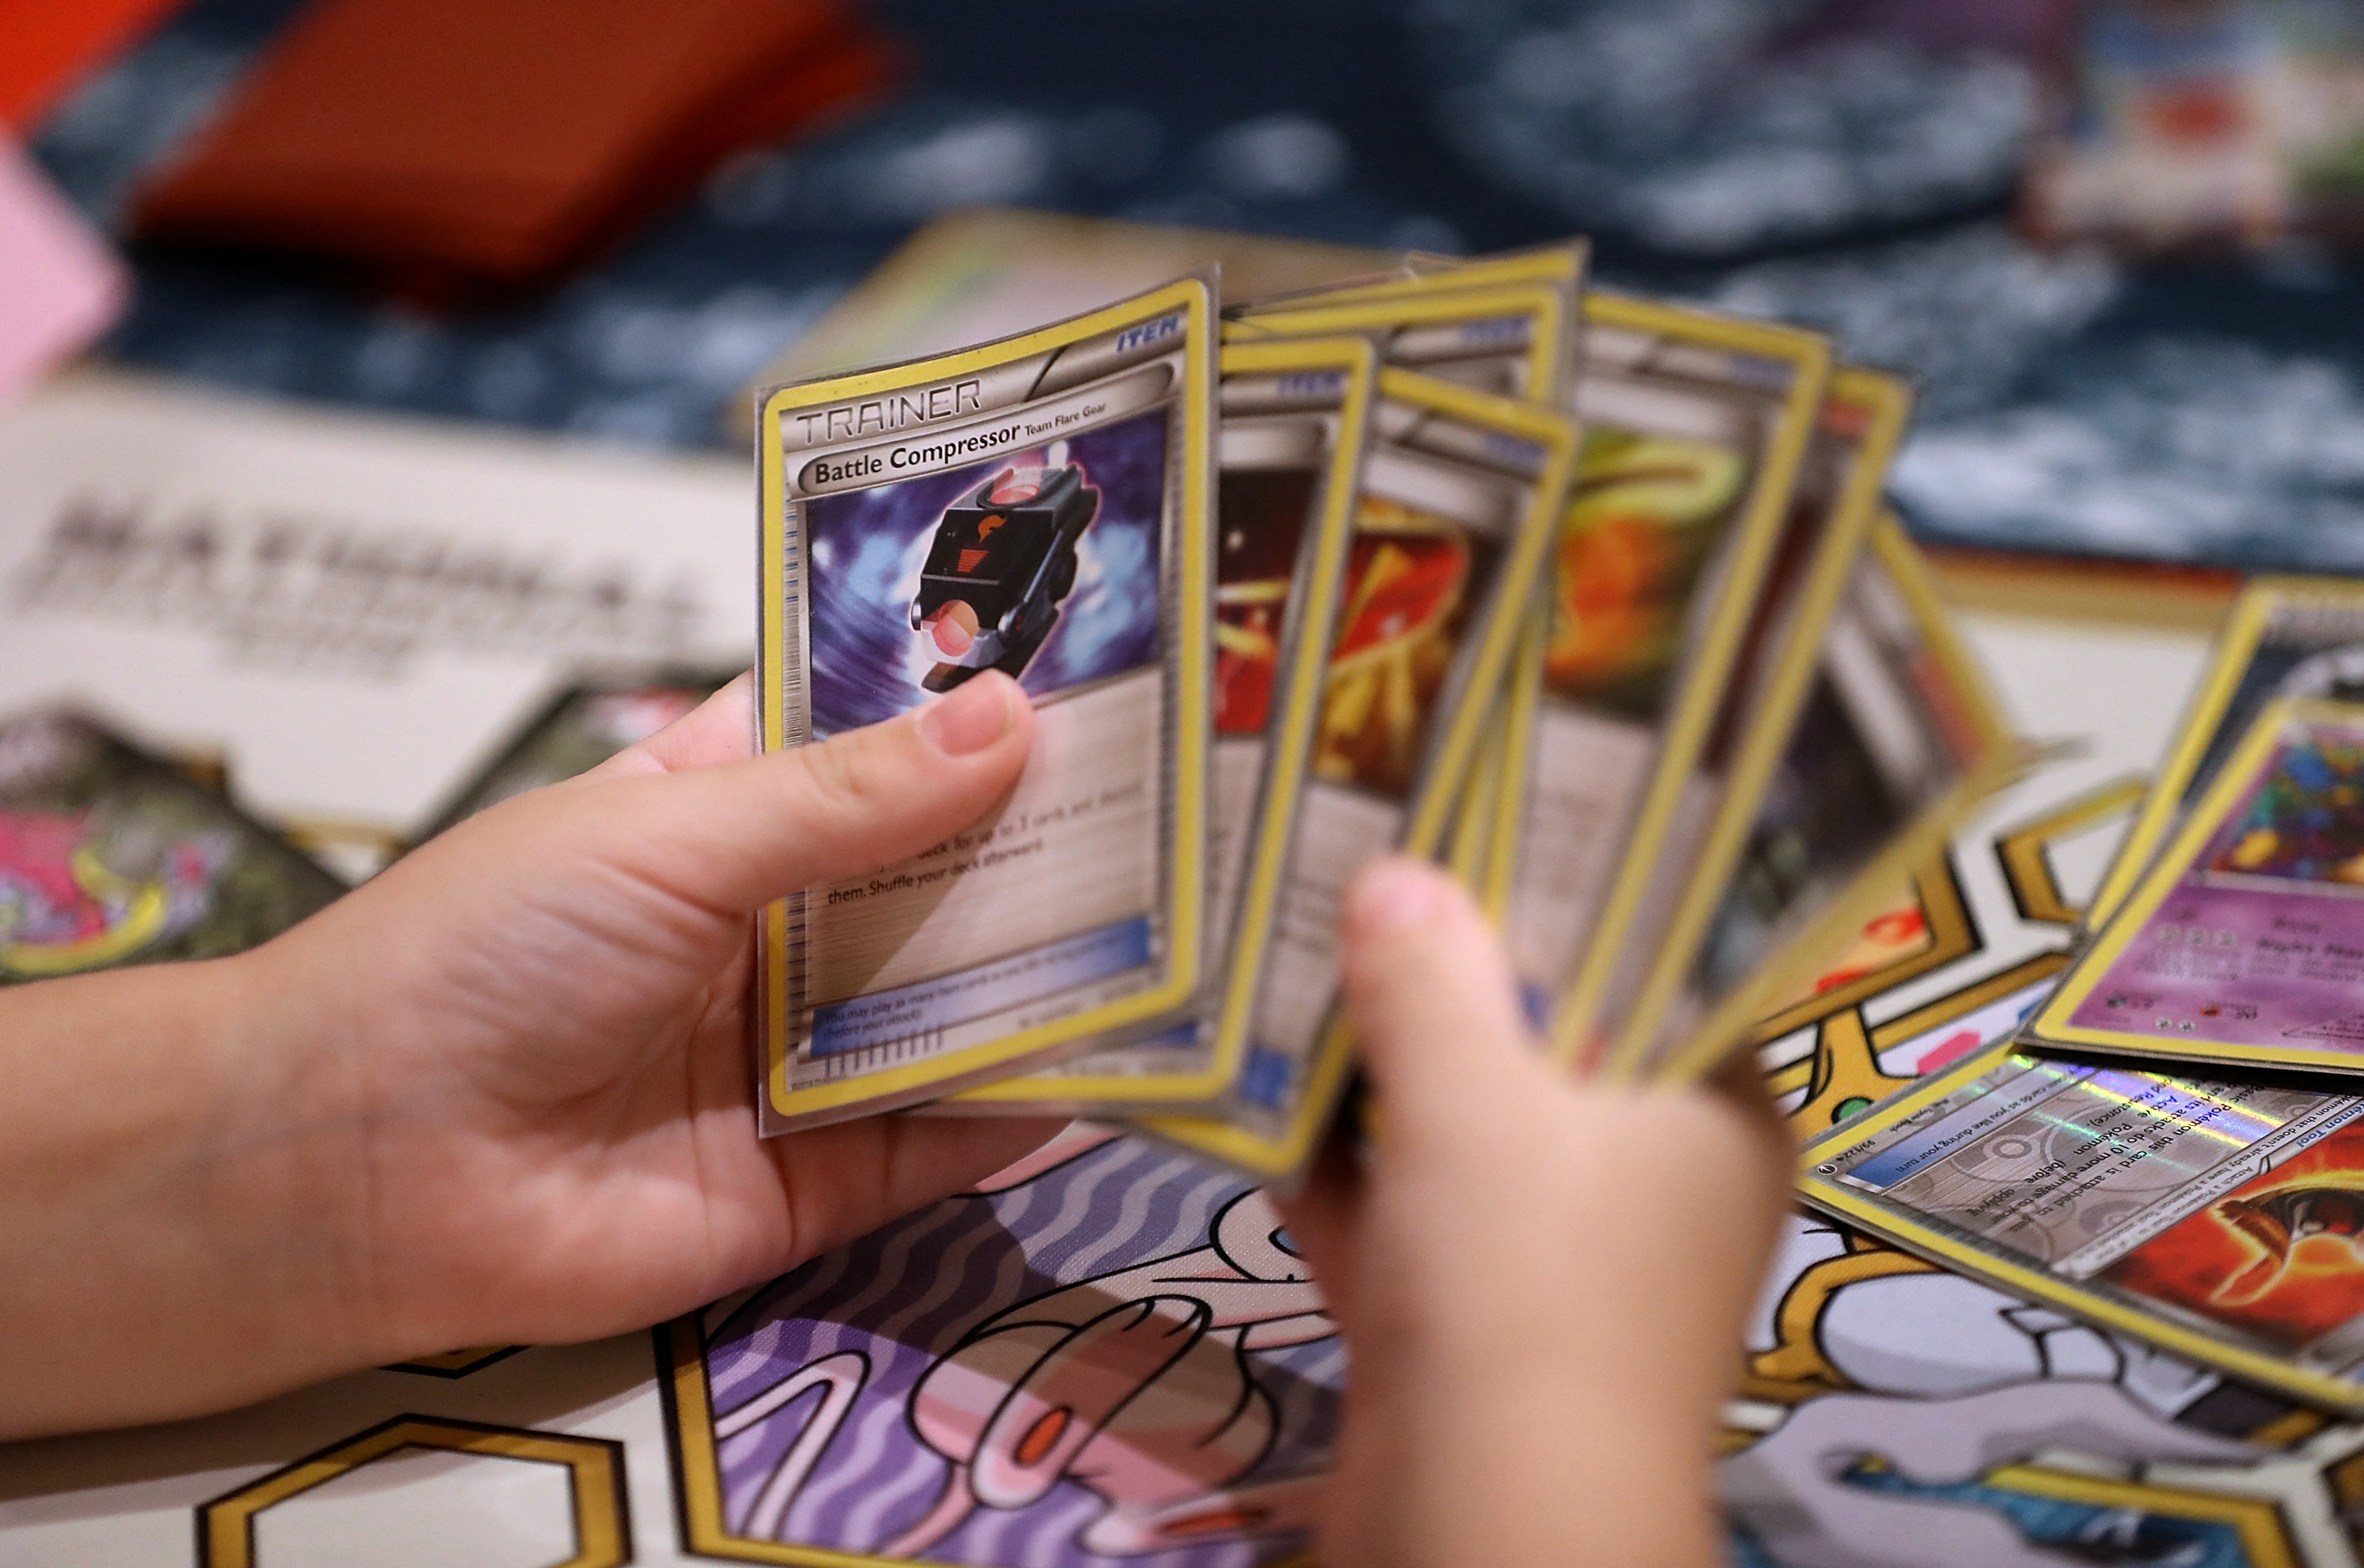 Devenues cultes, les cartes Pokémon s'arrachent à prix d'or